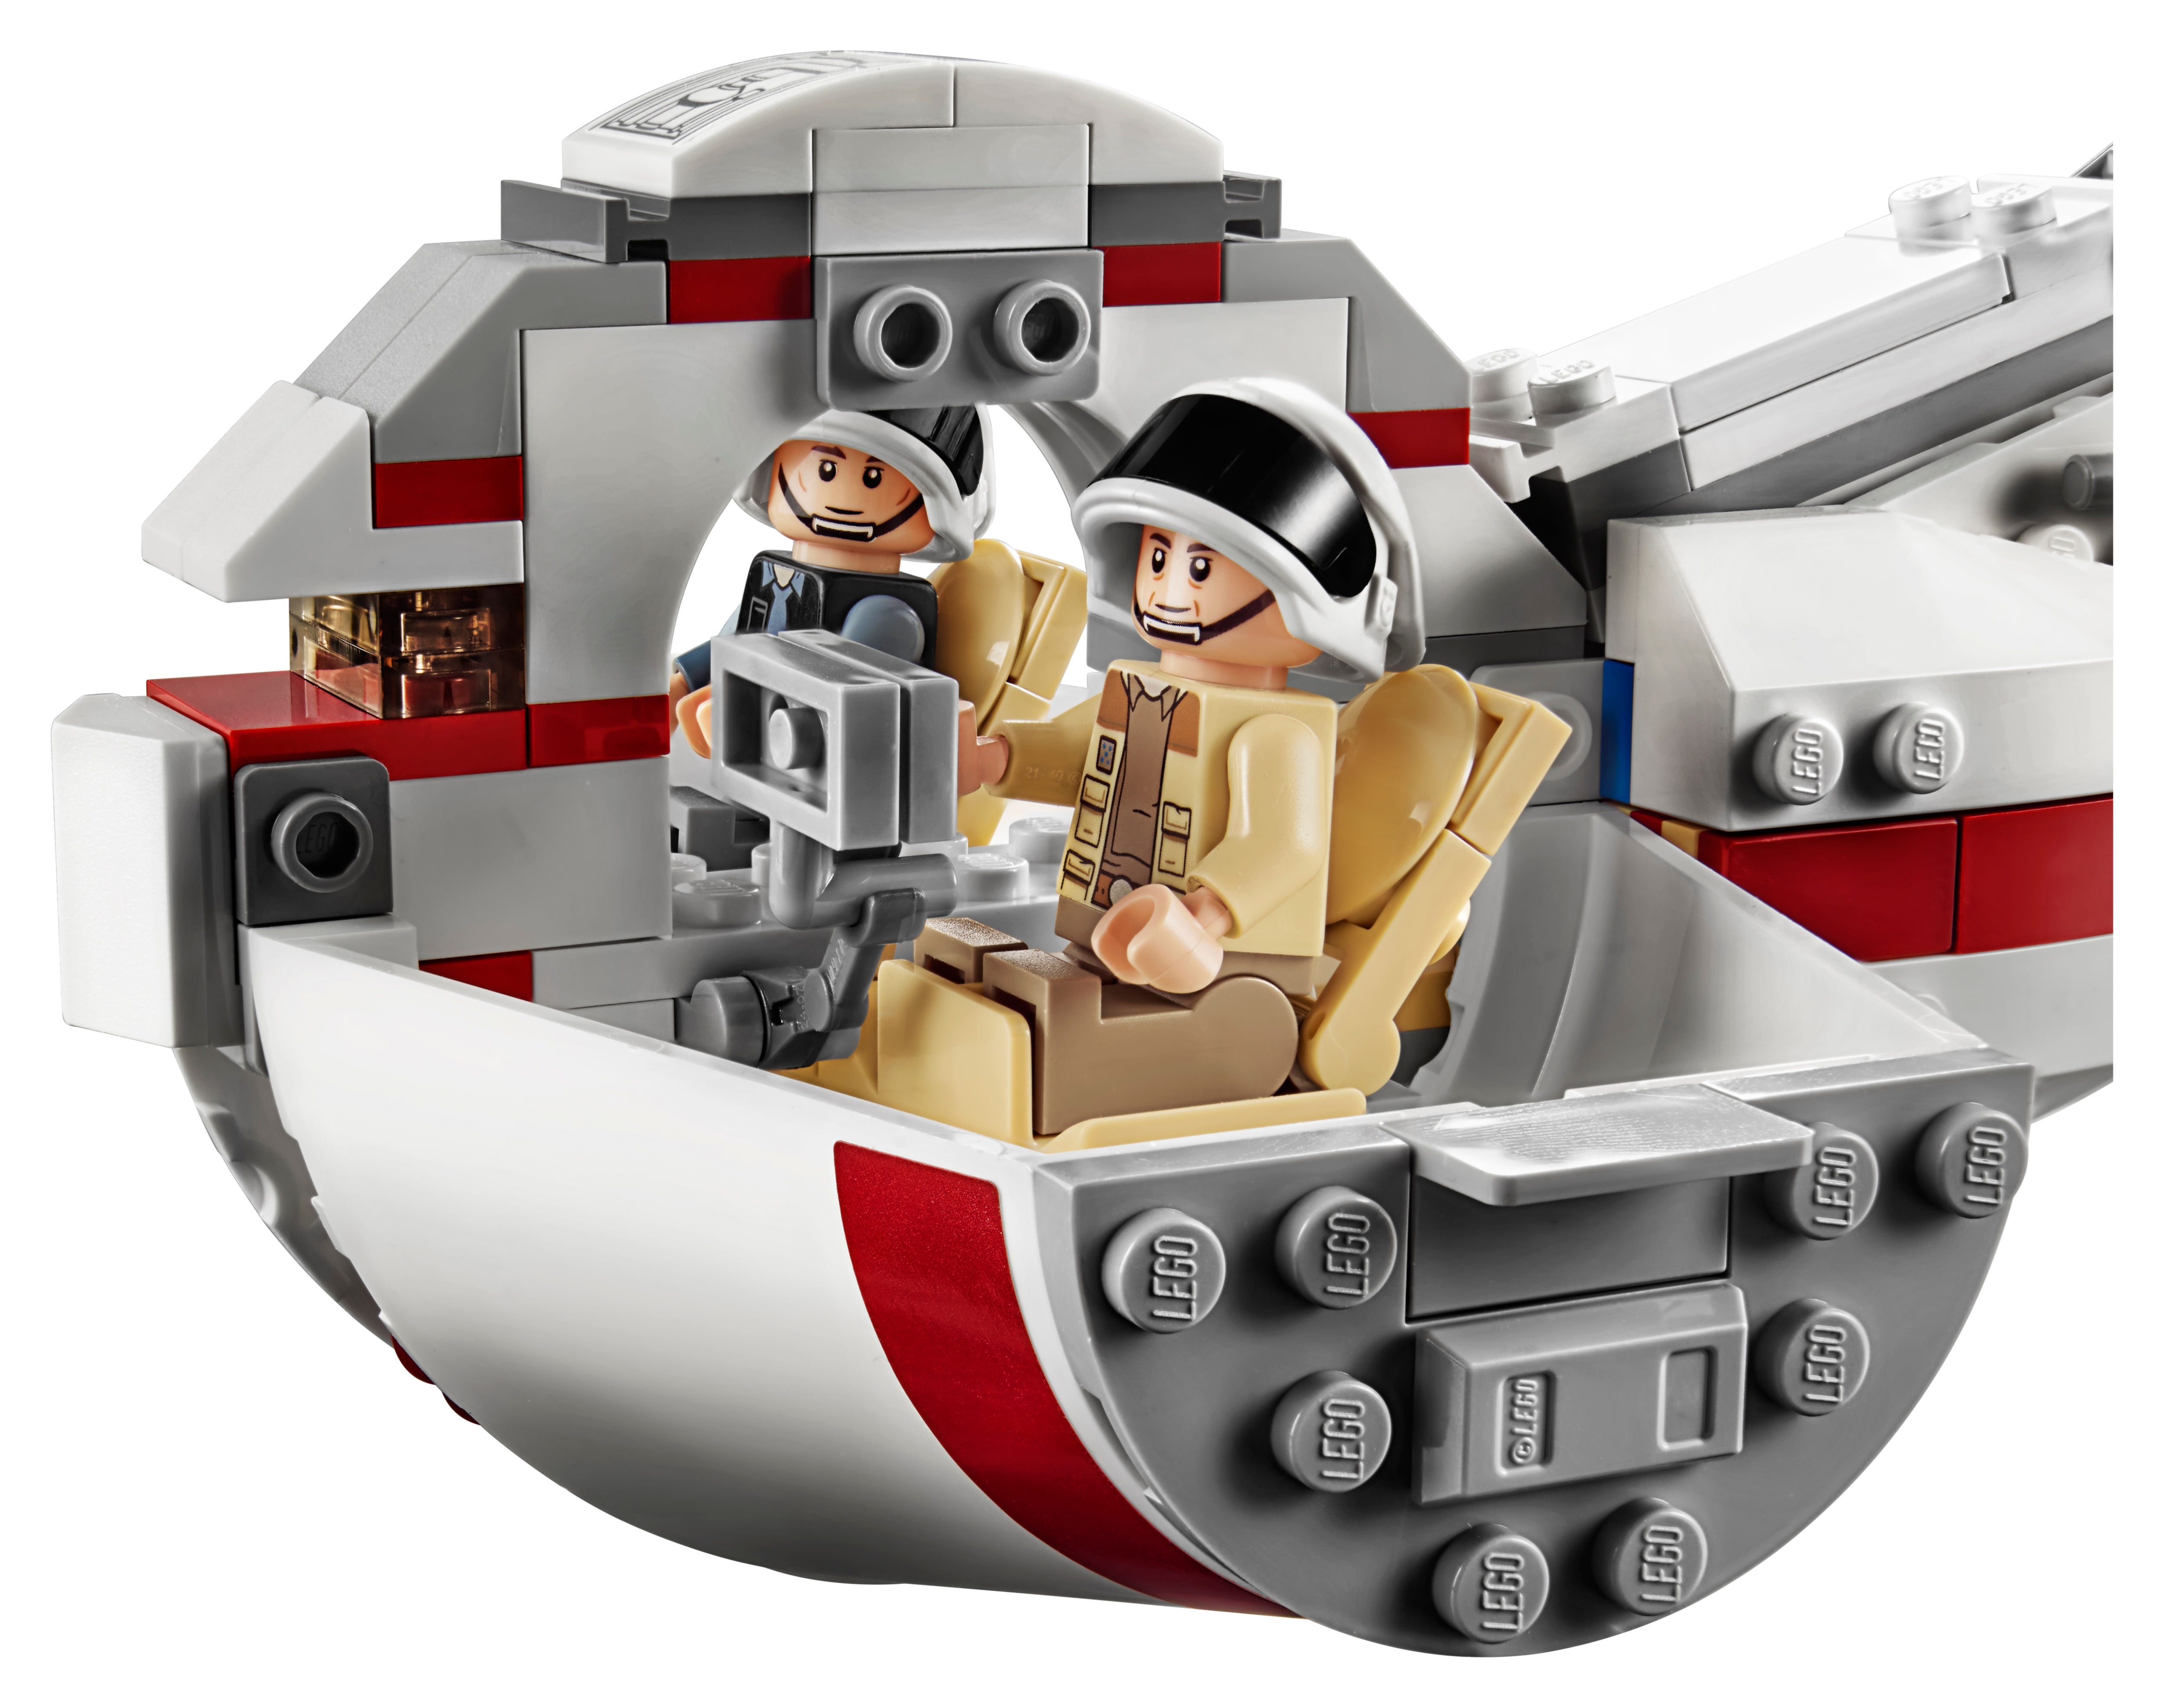 svinge Tragisk At blokere Tantive IV™ 75244 | Star Wars™ | Buy online at the Official LEGO® Shop US